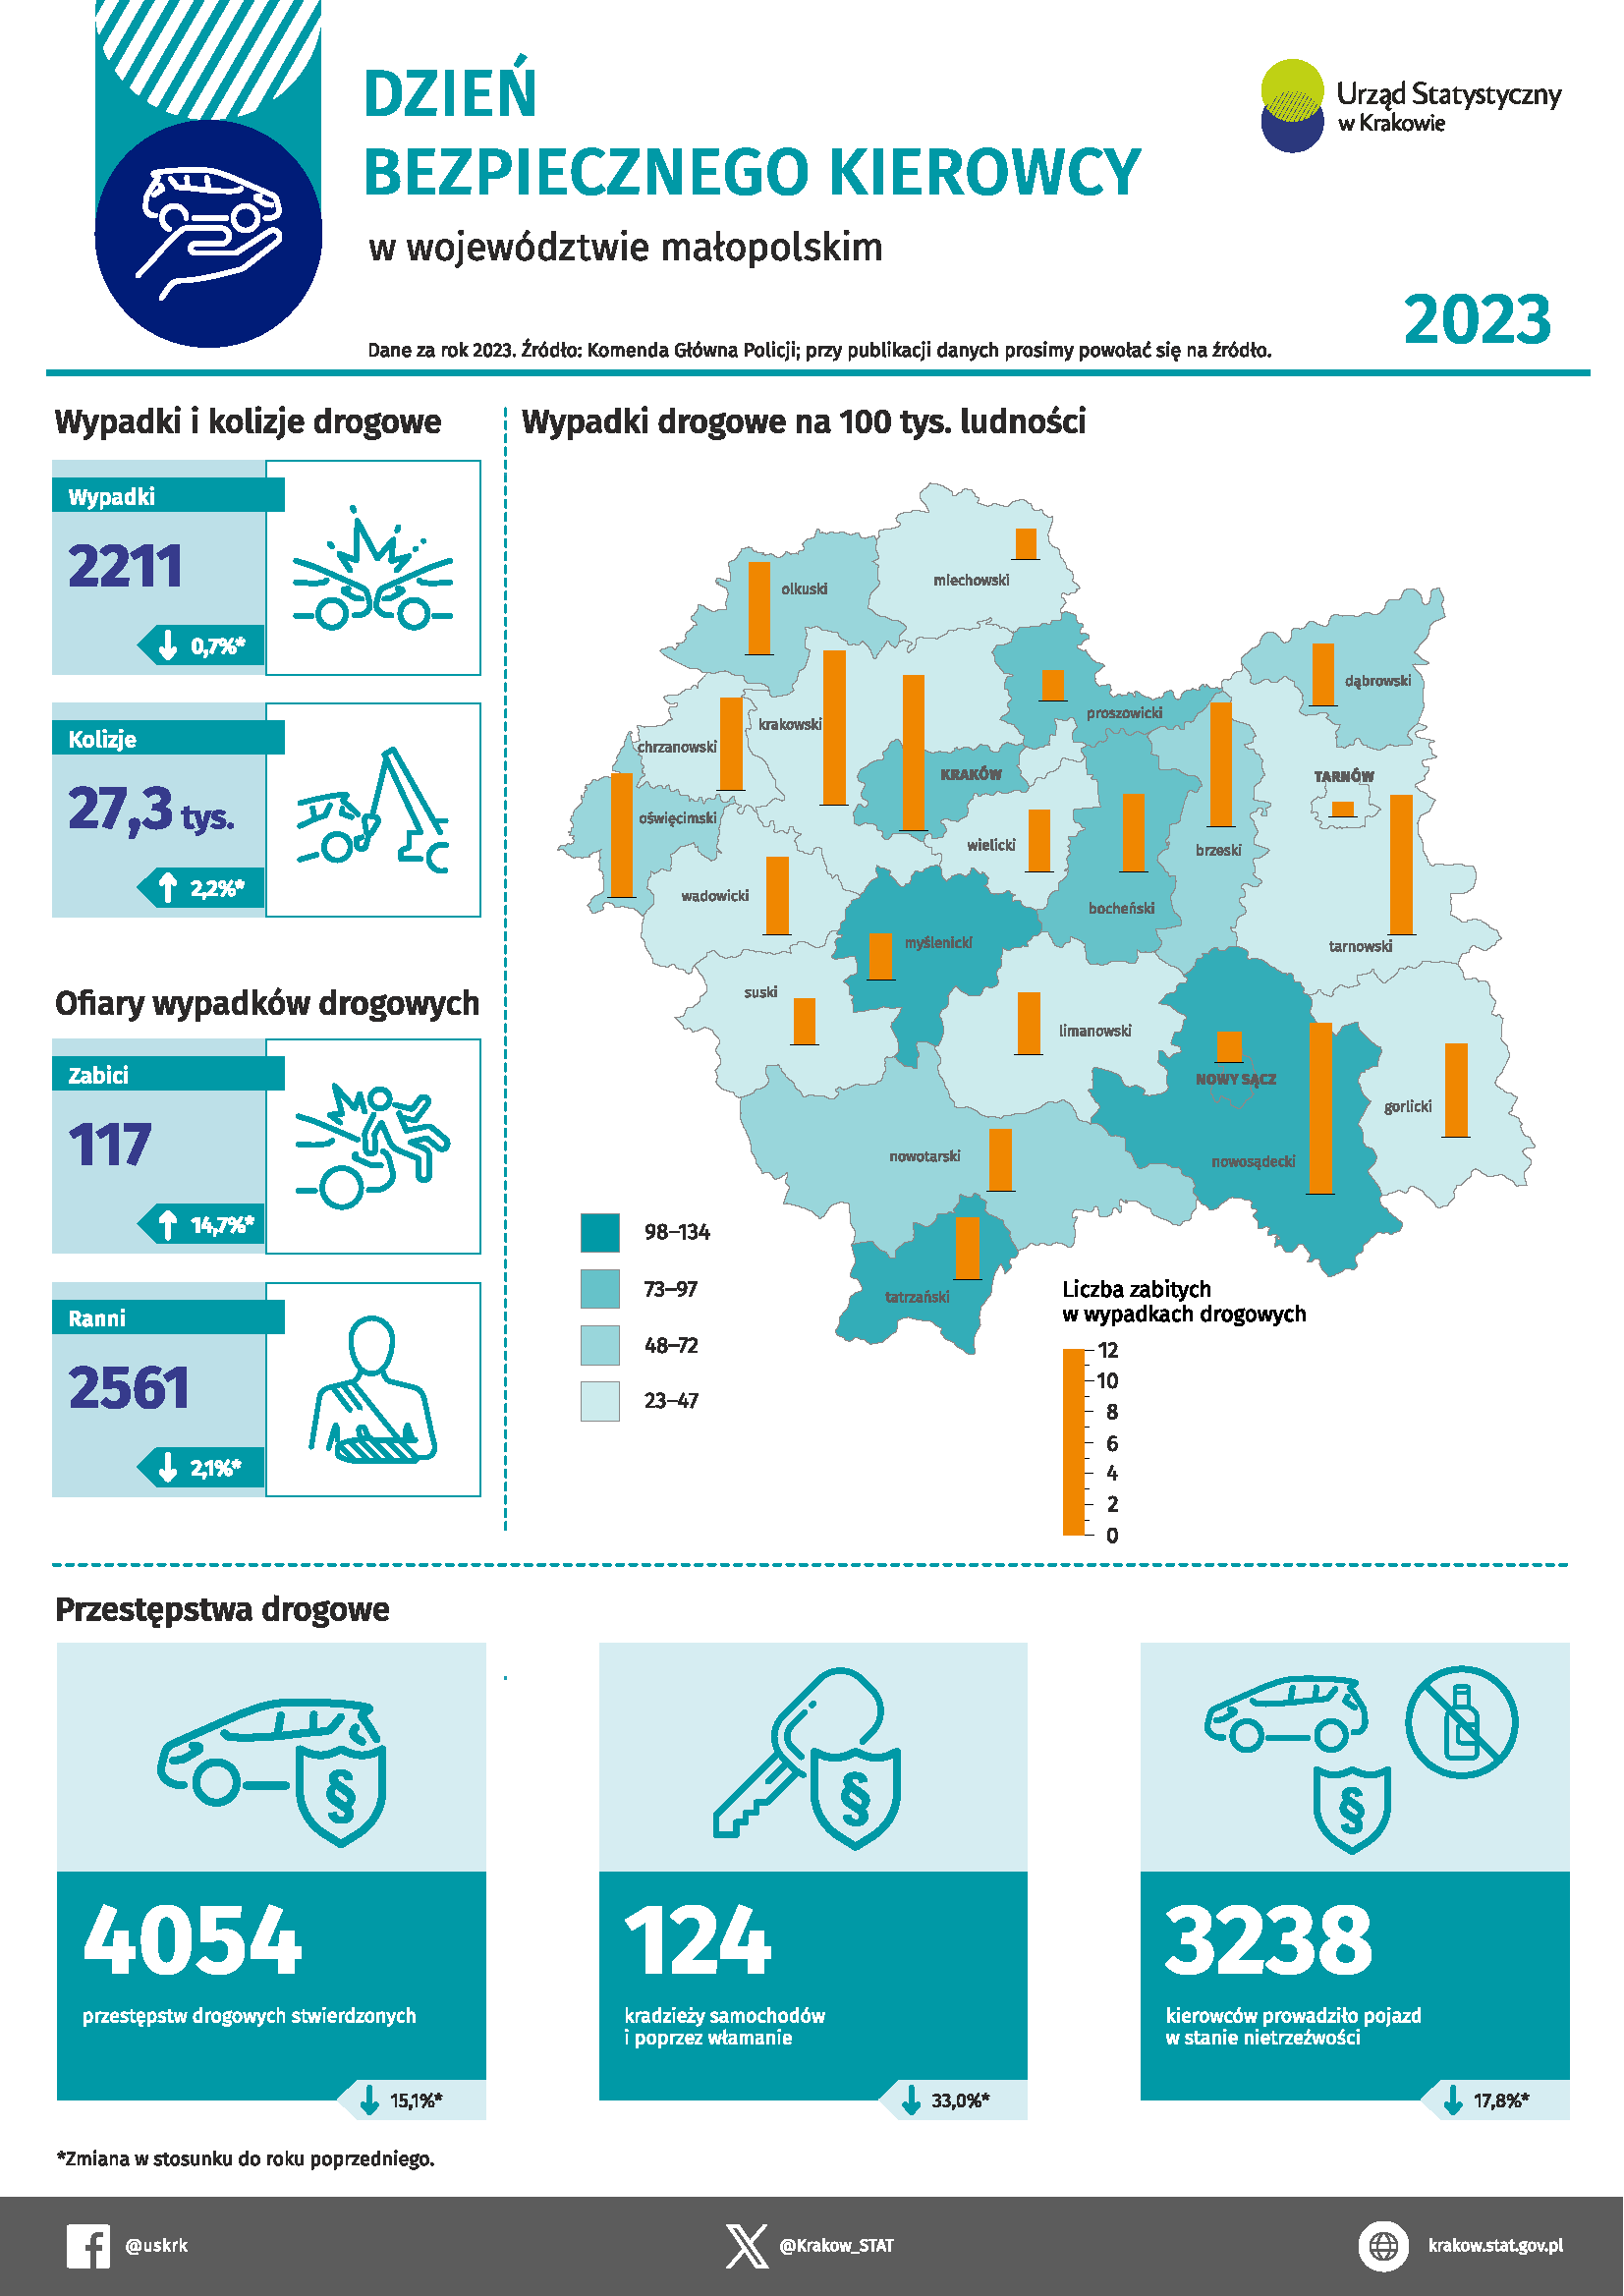 Infografika na Dzień Bezpiecznego Kierowcy – bezpieczeństwo w ruchu drogowym w województwie małopolskim w 2023 r